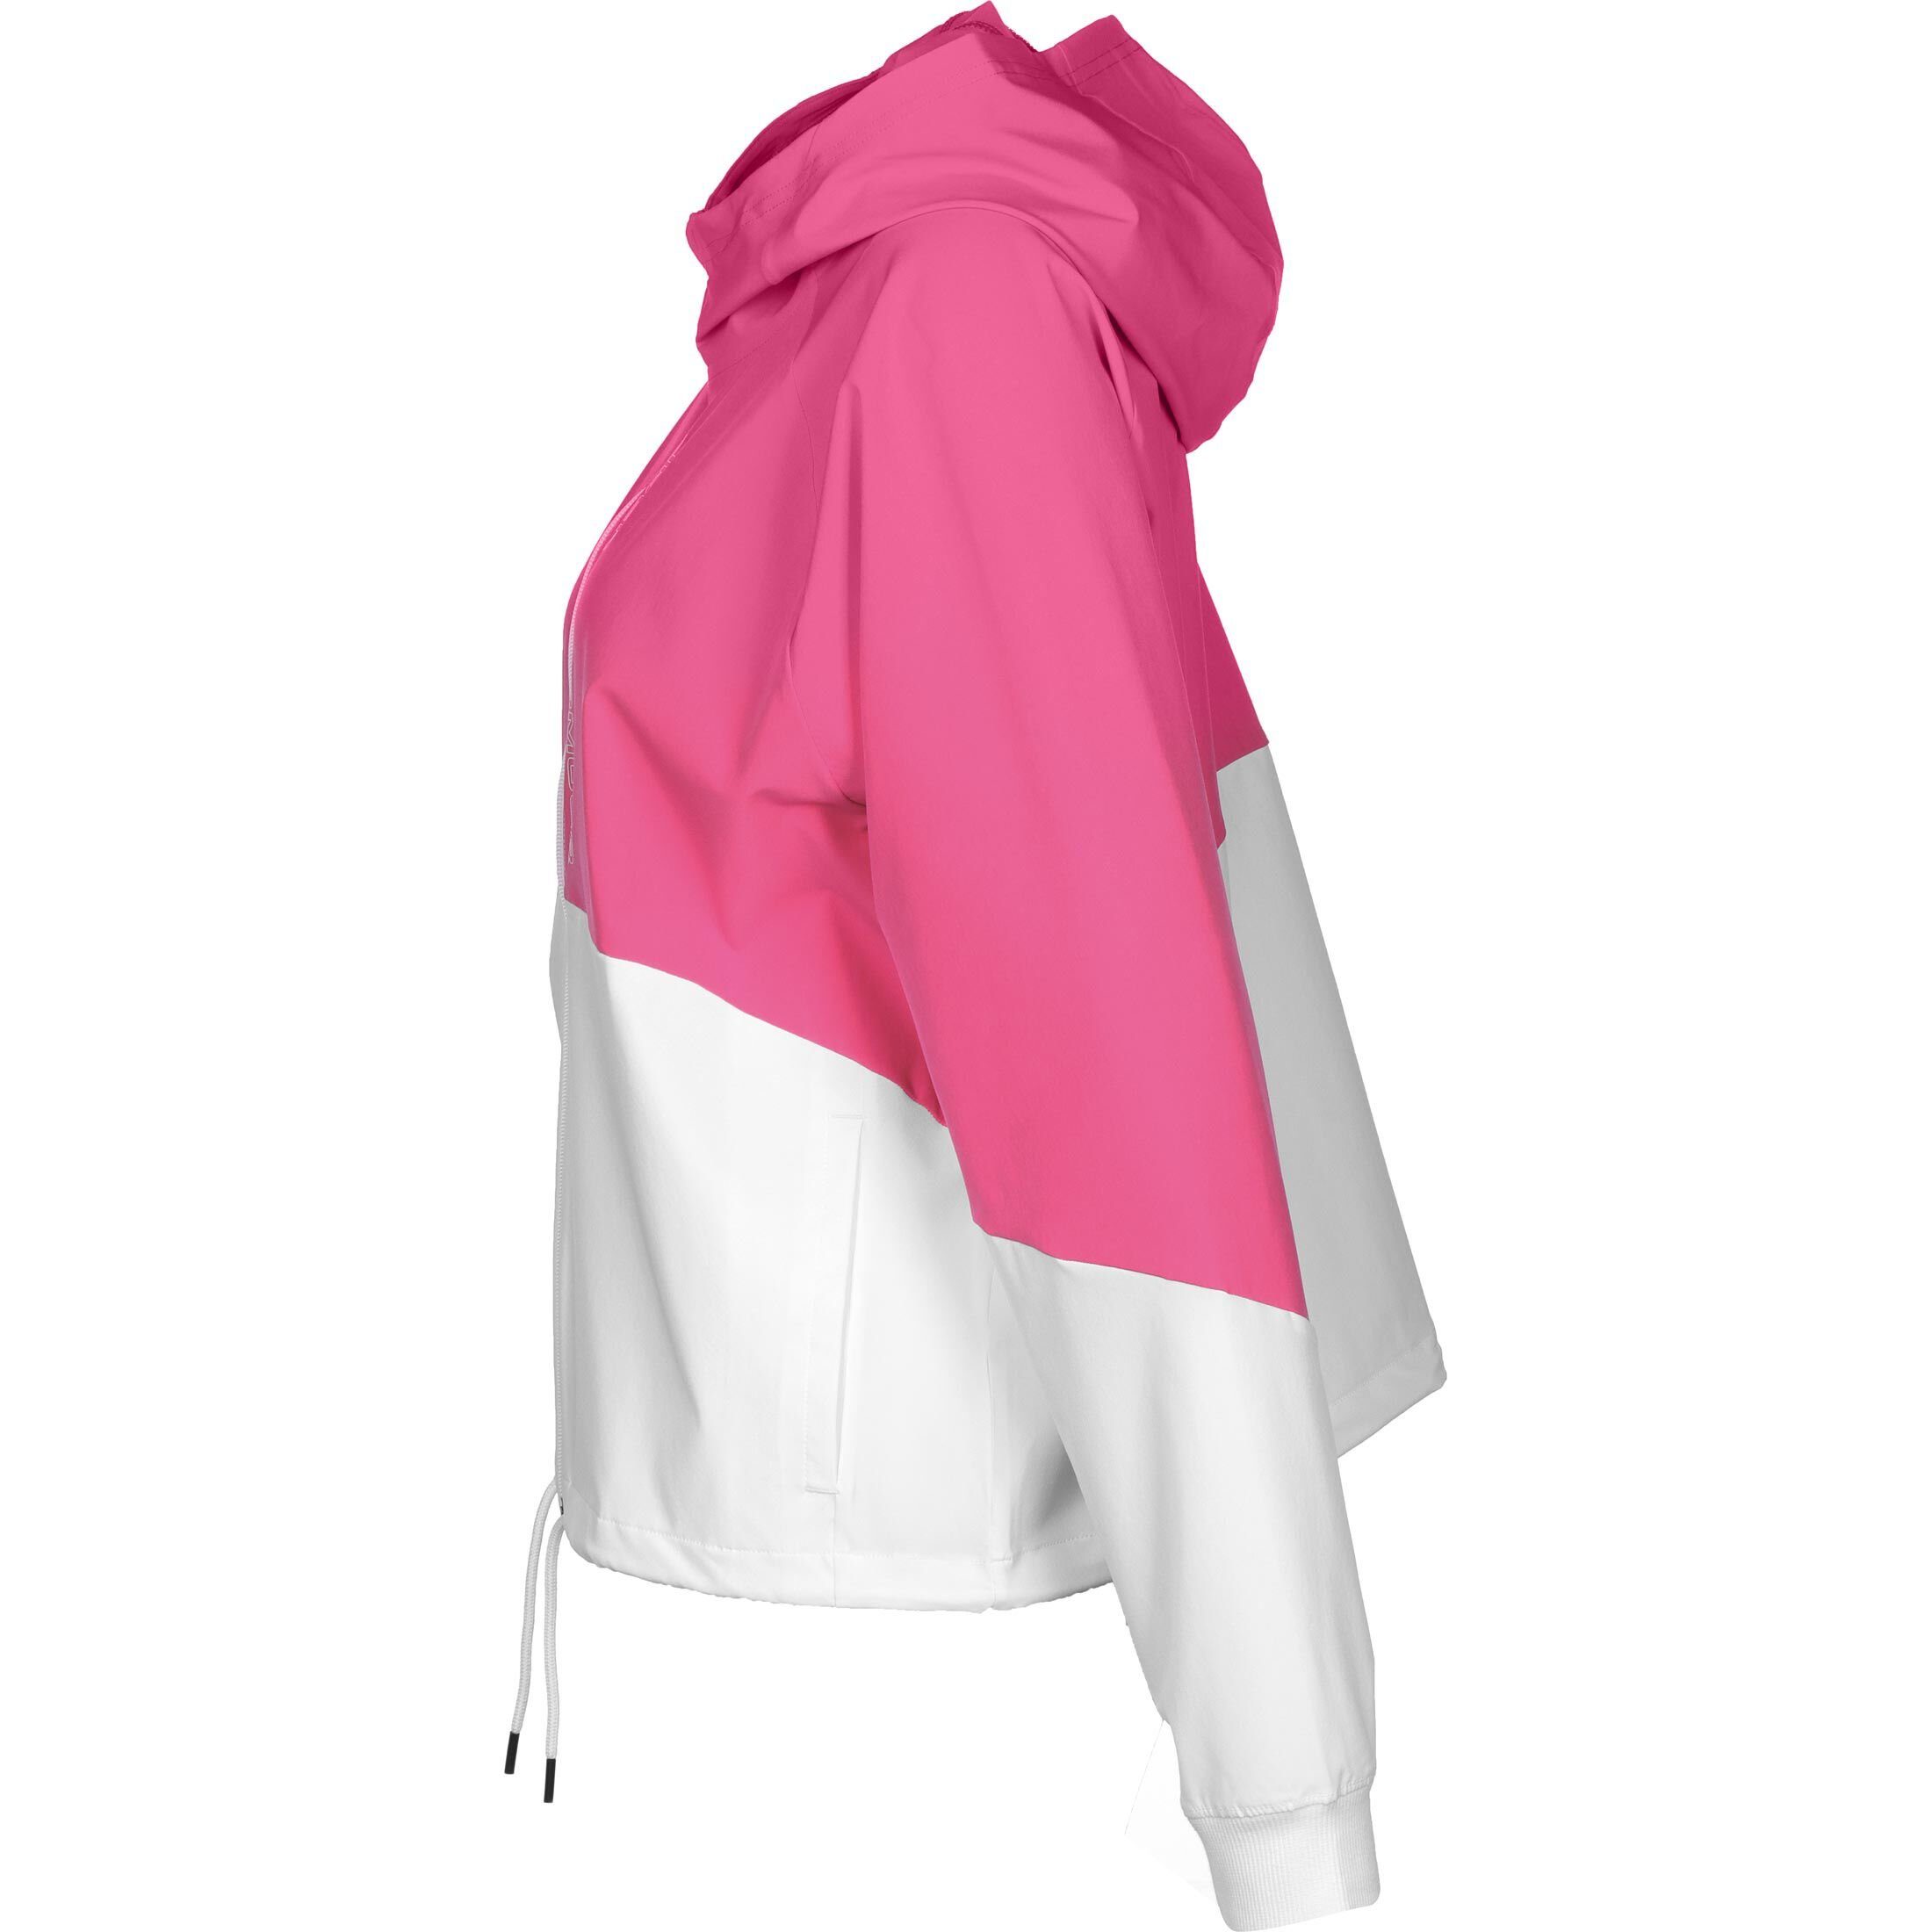 Woven Under Damen Jacke / Armour® Trainingsjacke pink weiß